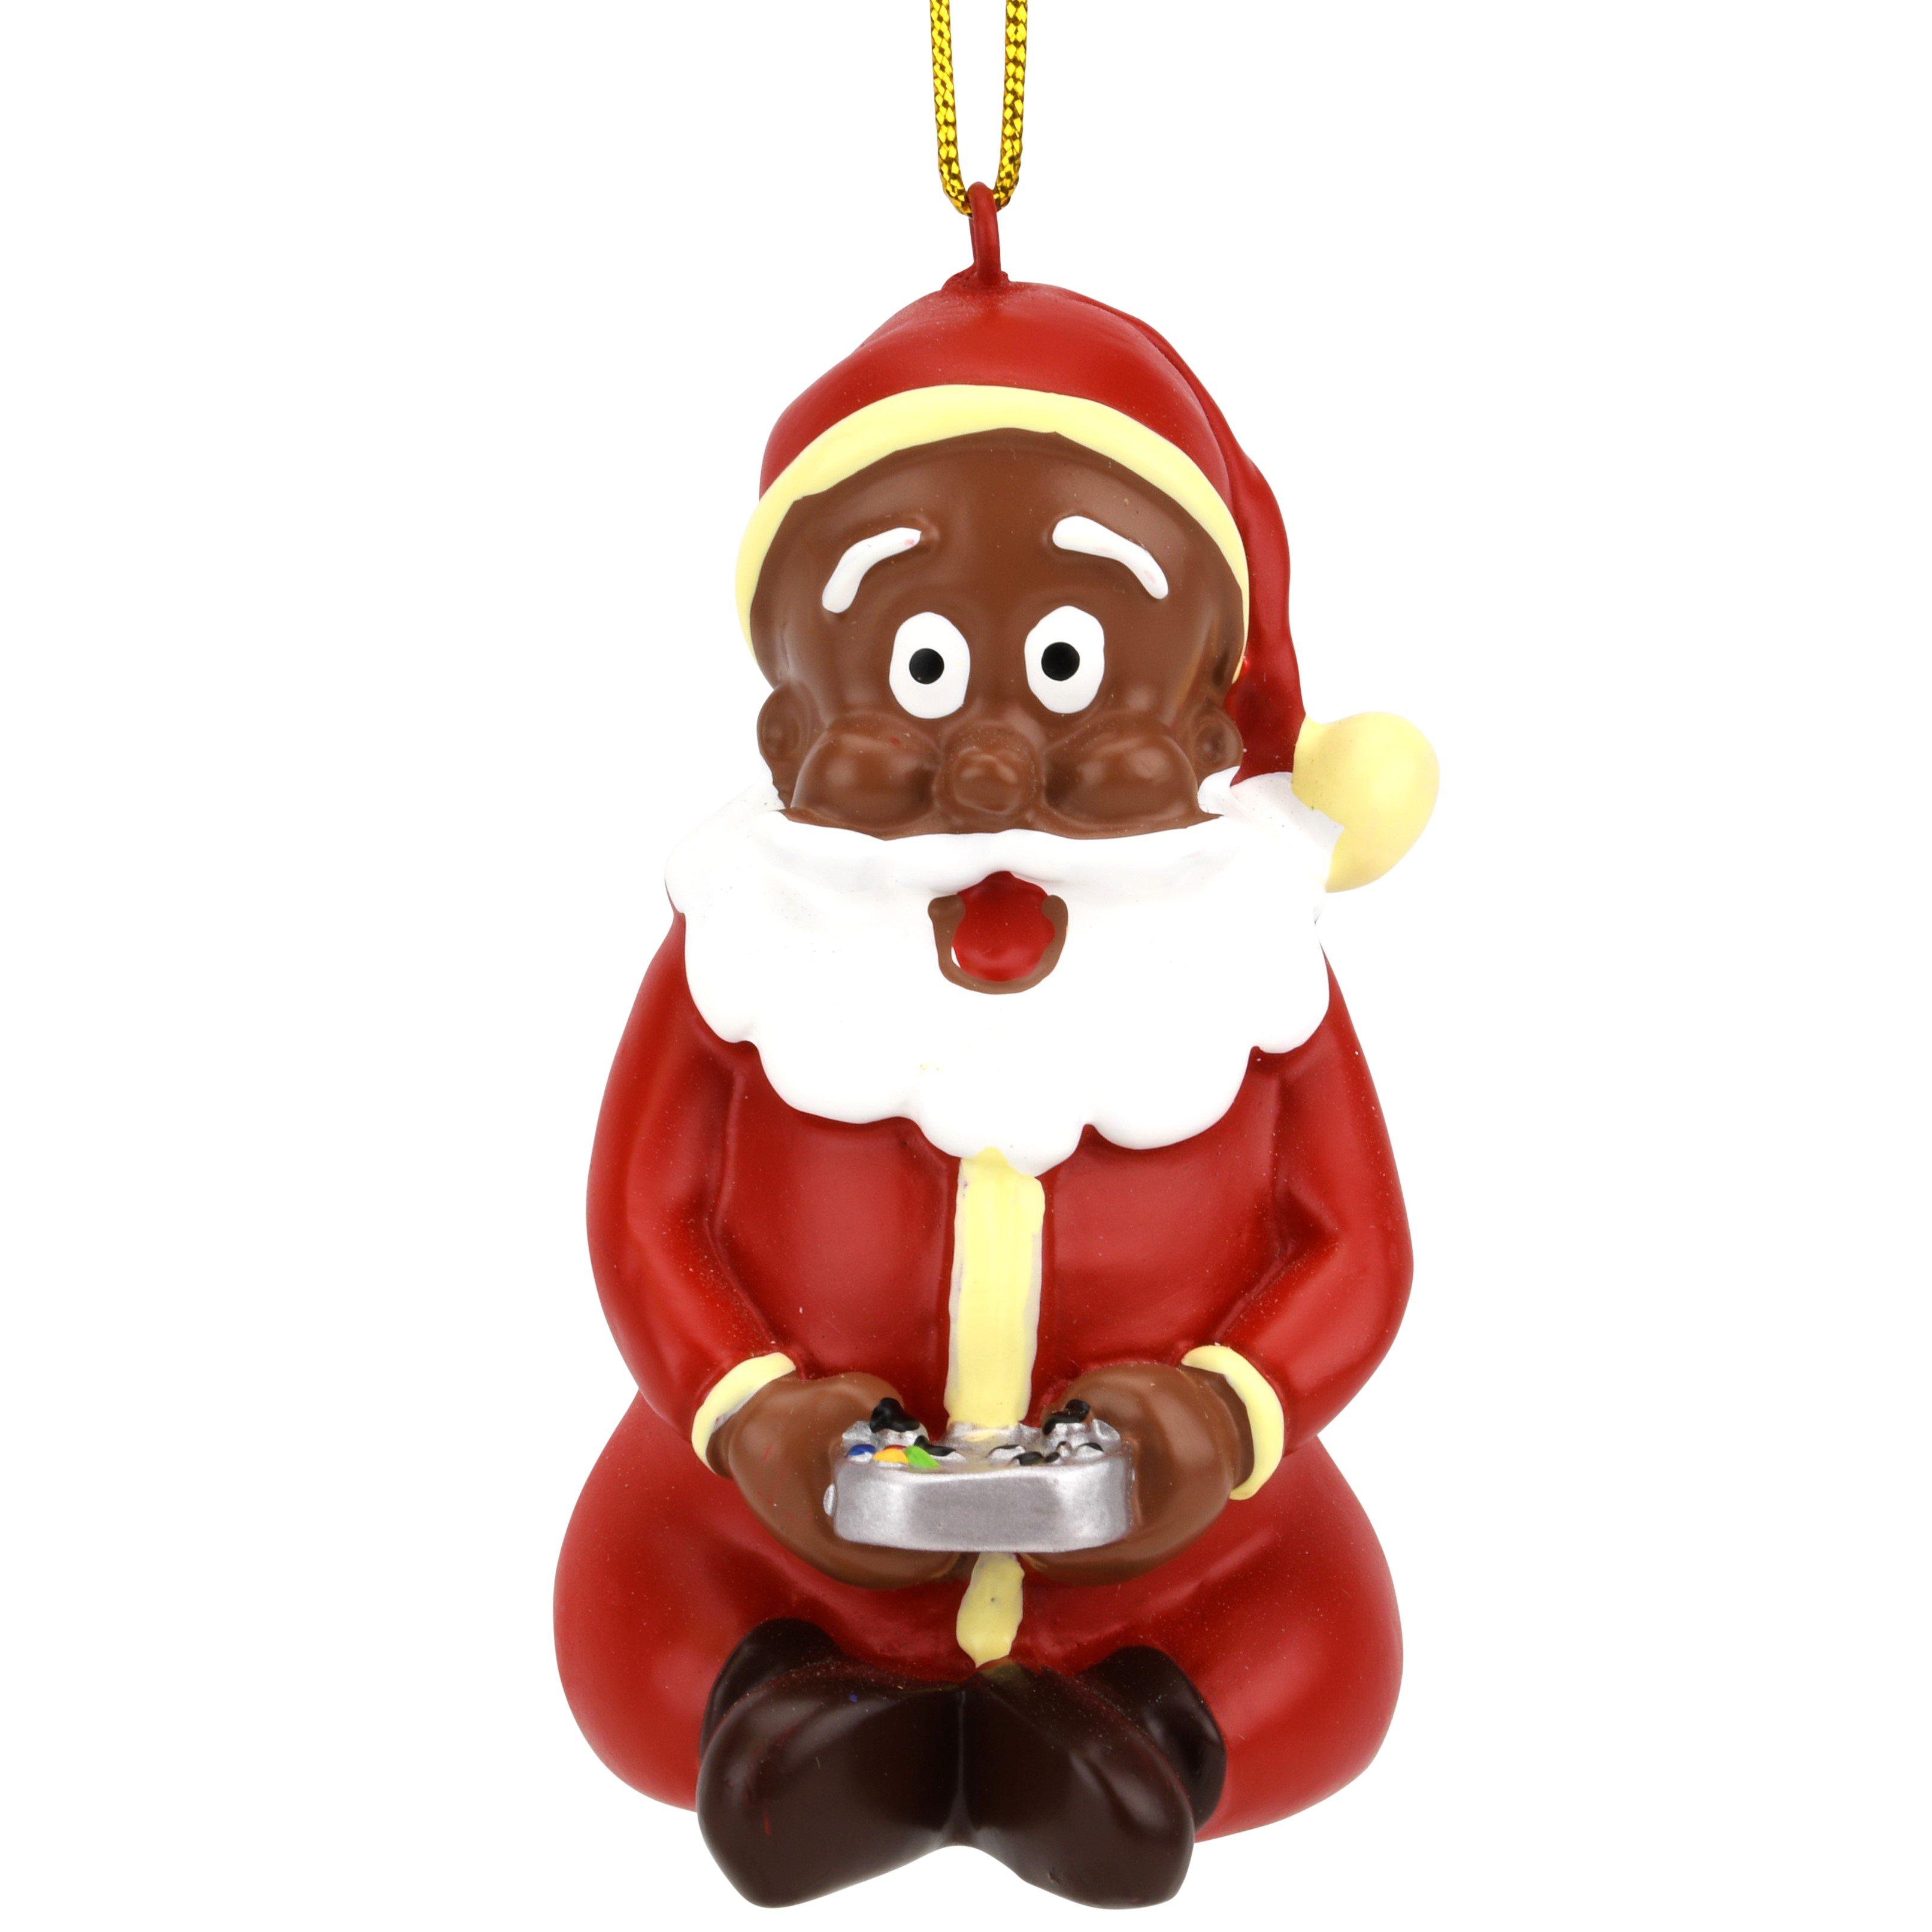 Gamer Santa Claus Video Gaming Christmas Ornament - Dark Tone